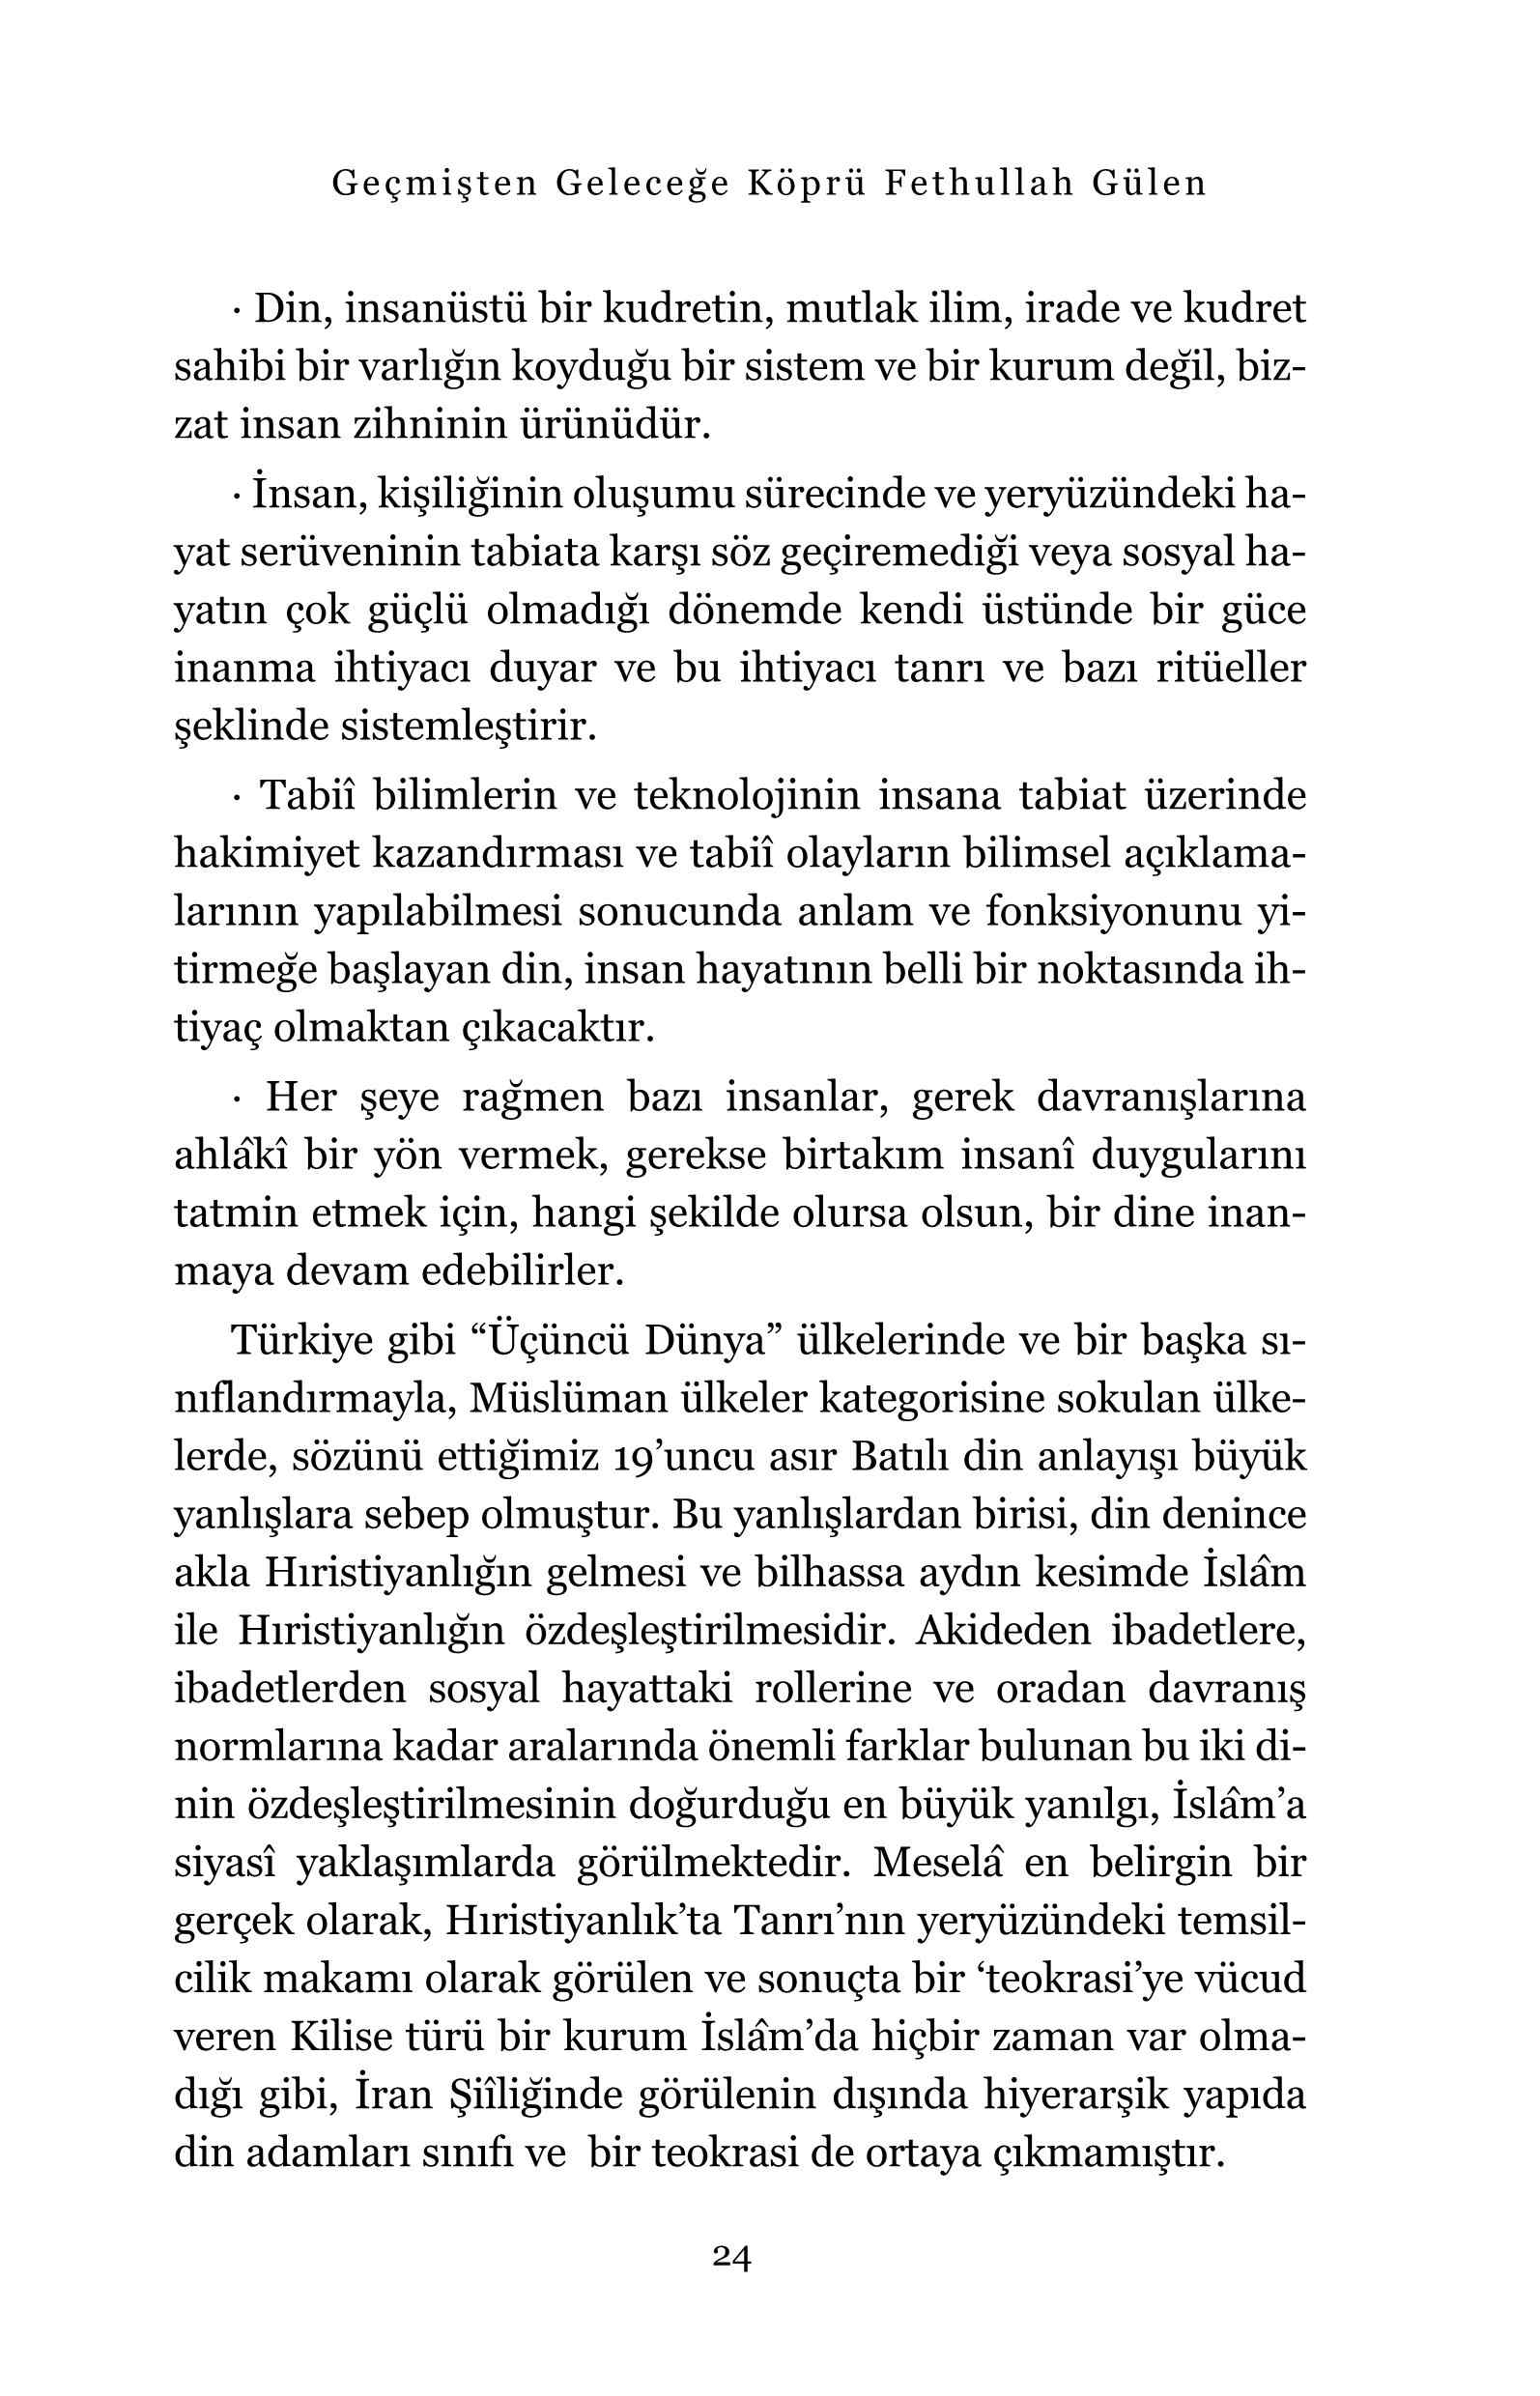 Ali Unal - Gecmisten Gelecege Kopru Fethullah Gülen - IsikYayinlari.pdf, 327-Sayfa 